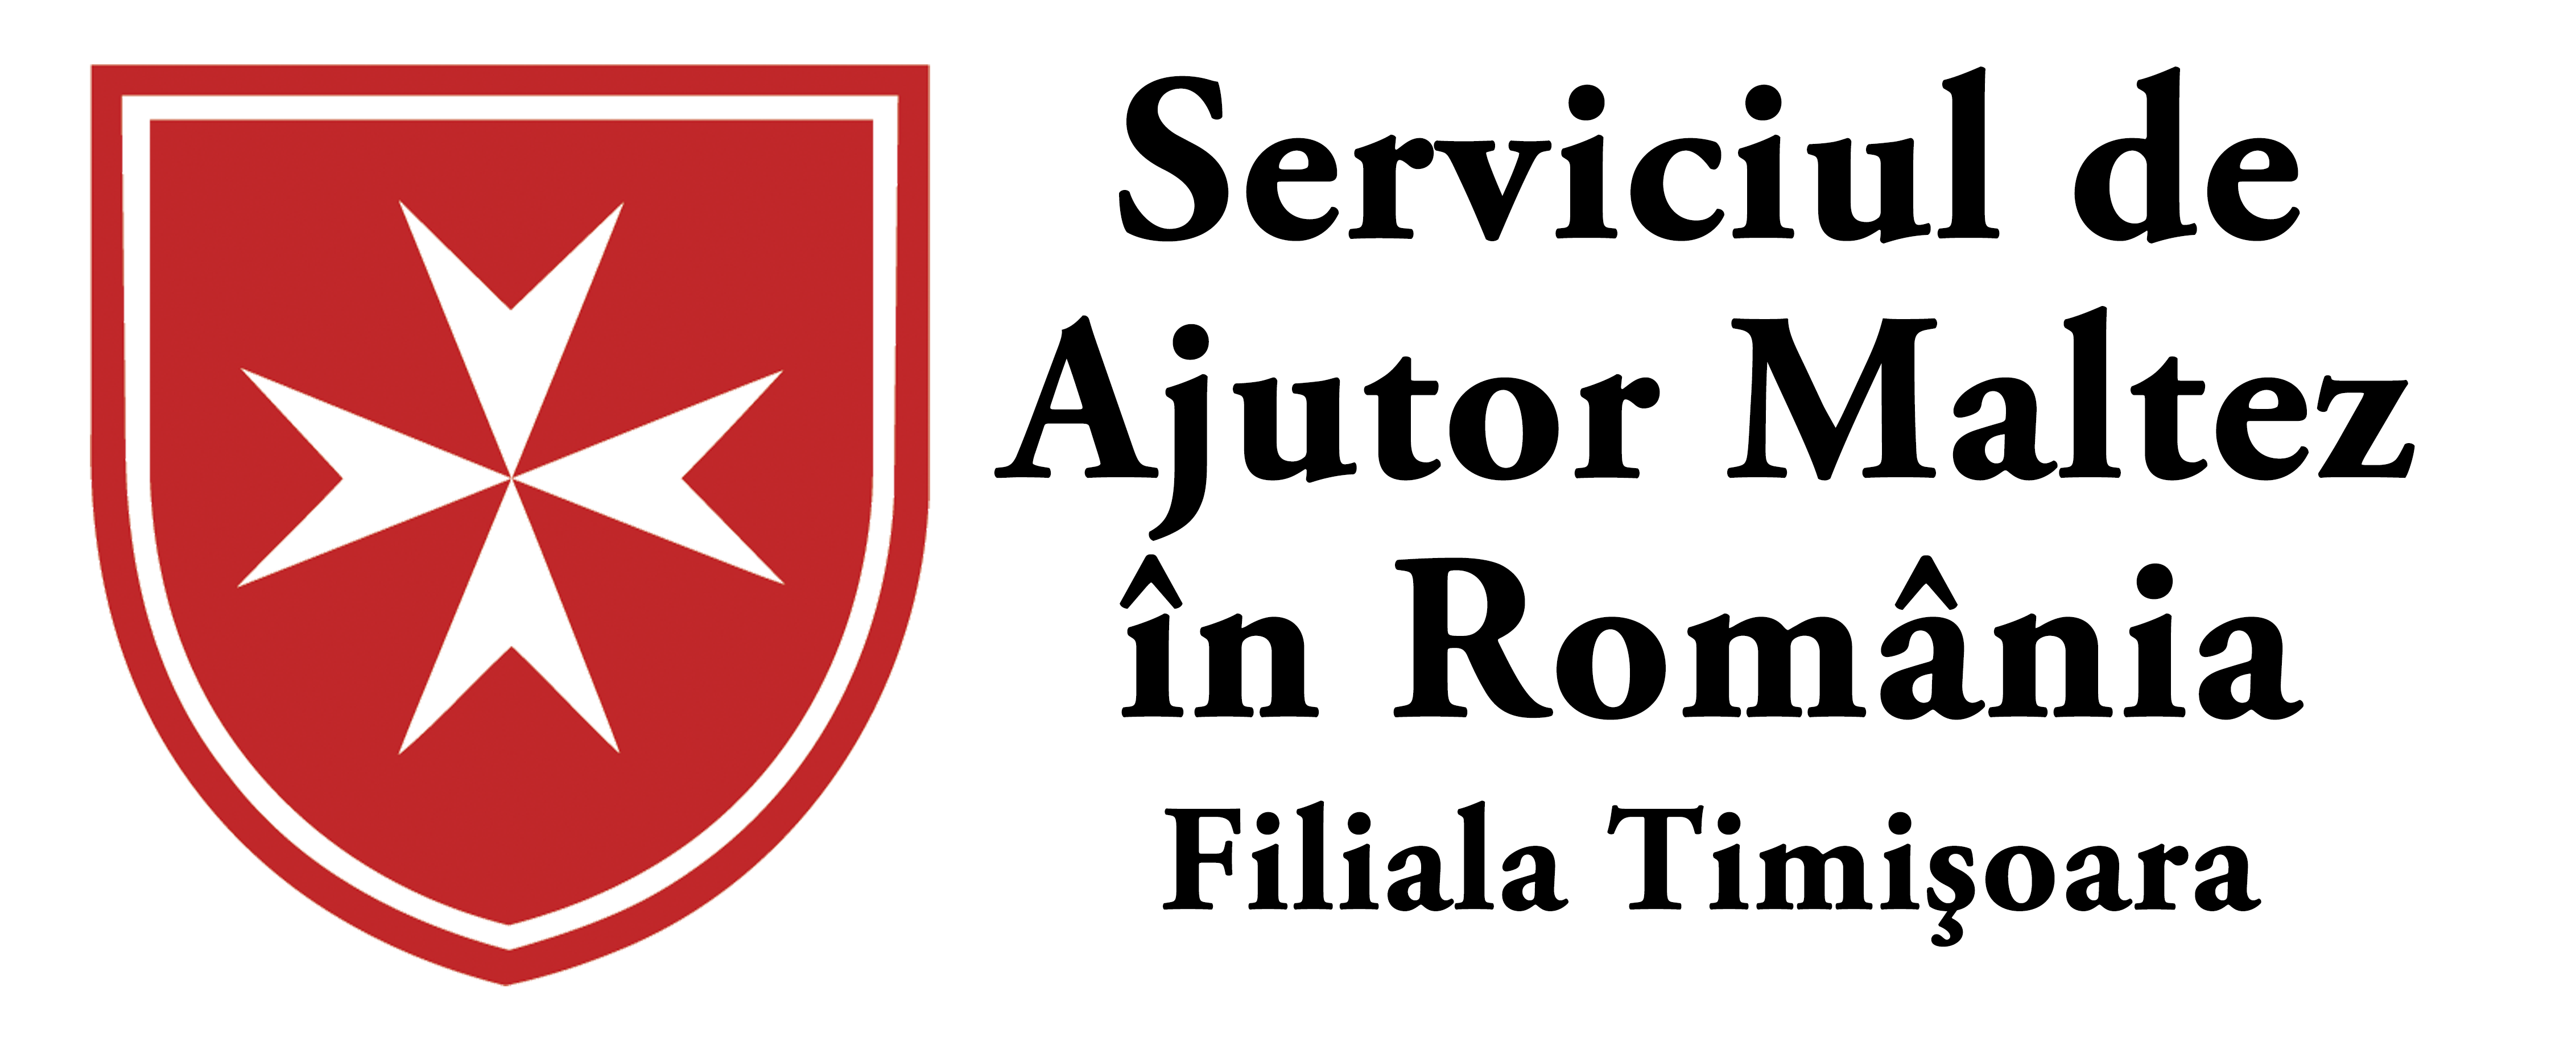 Serviciul de Ajutor Maltez în România - filiala Timișoara logo